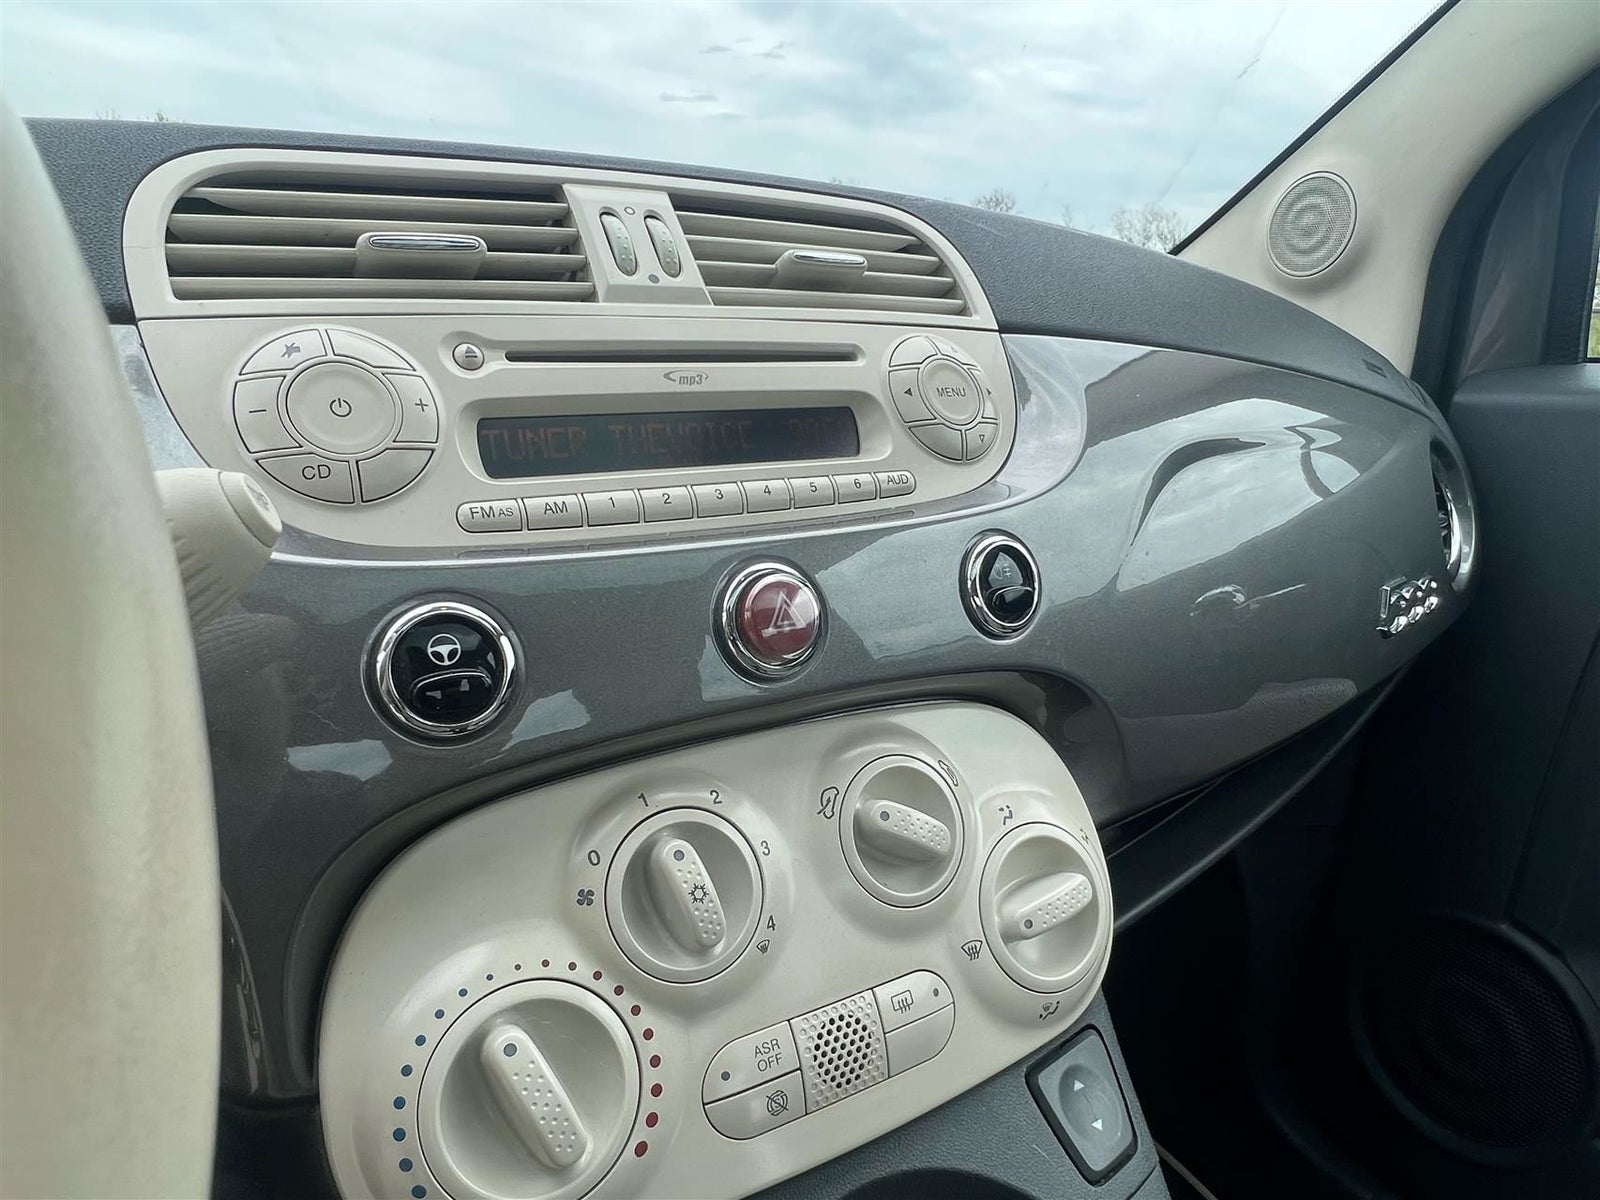 Fiat 500 1,2 Lounge Benzin modelår 2011 km 213000 Koksmetal